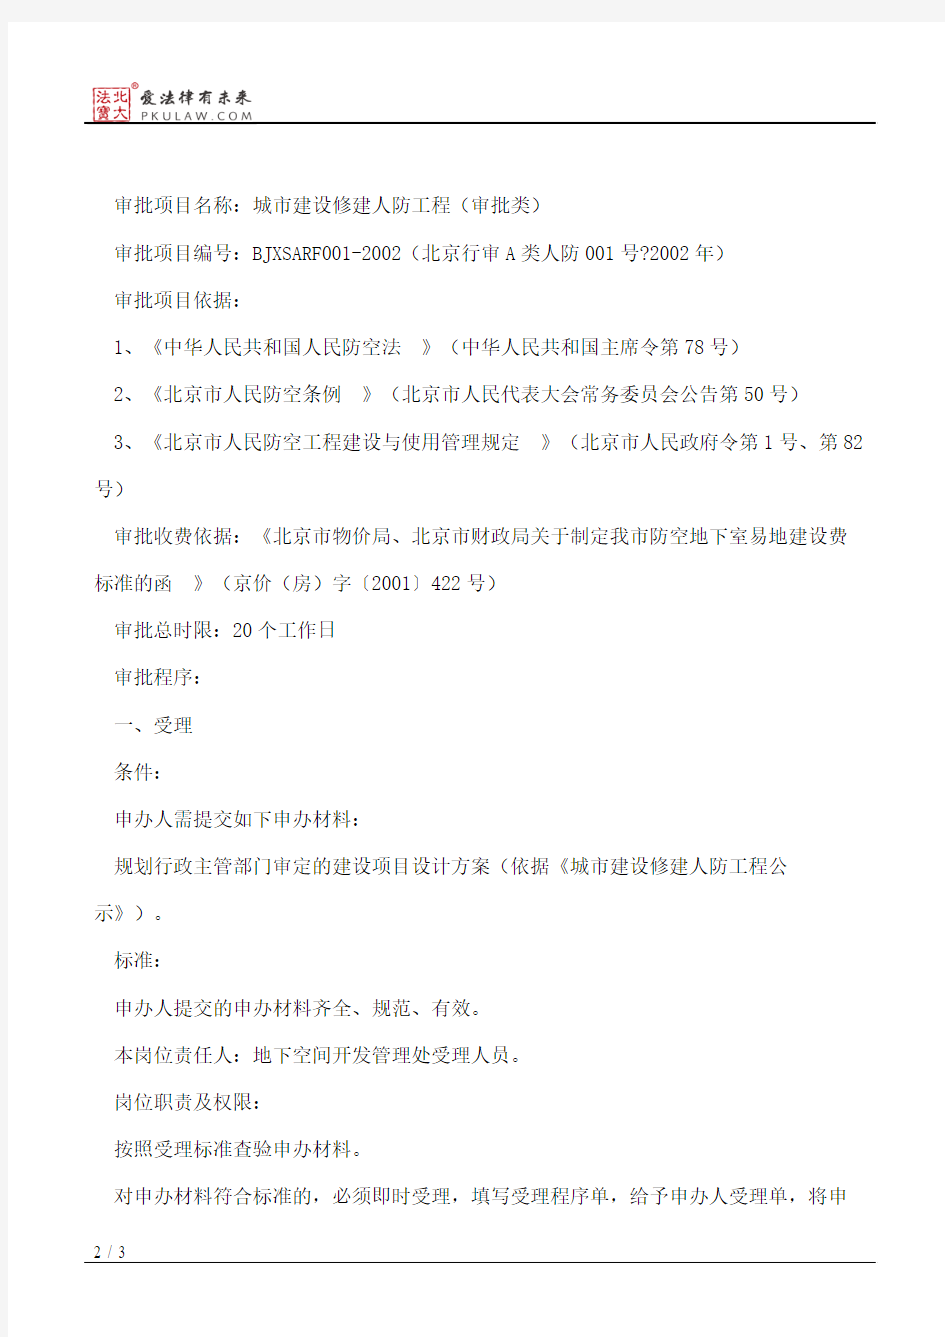 北京市人民防空办公室关于印发《市人防办关于行政审批程序的规定